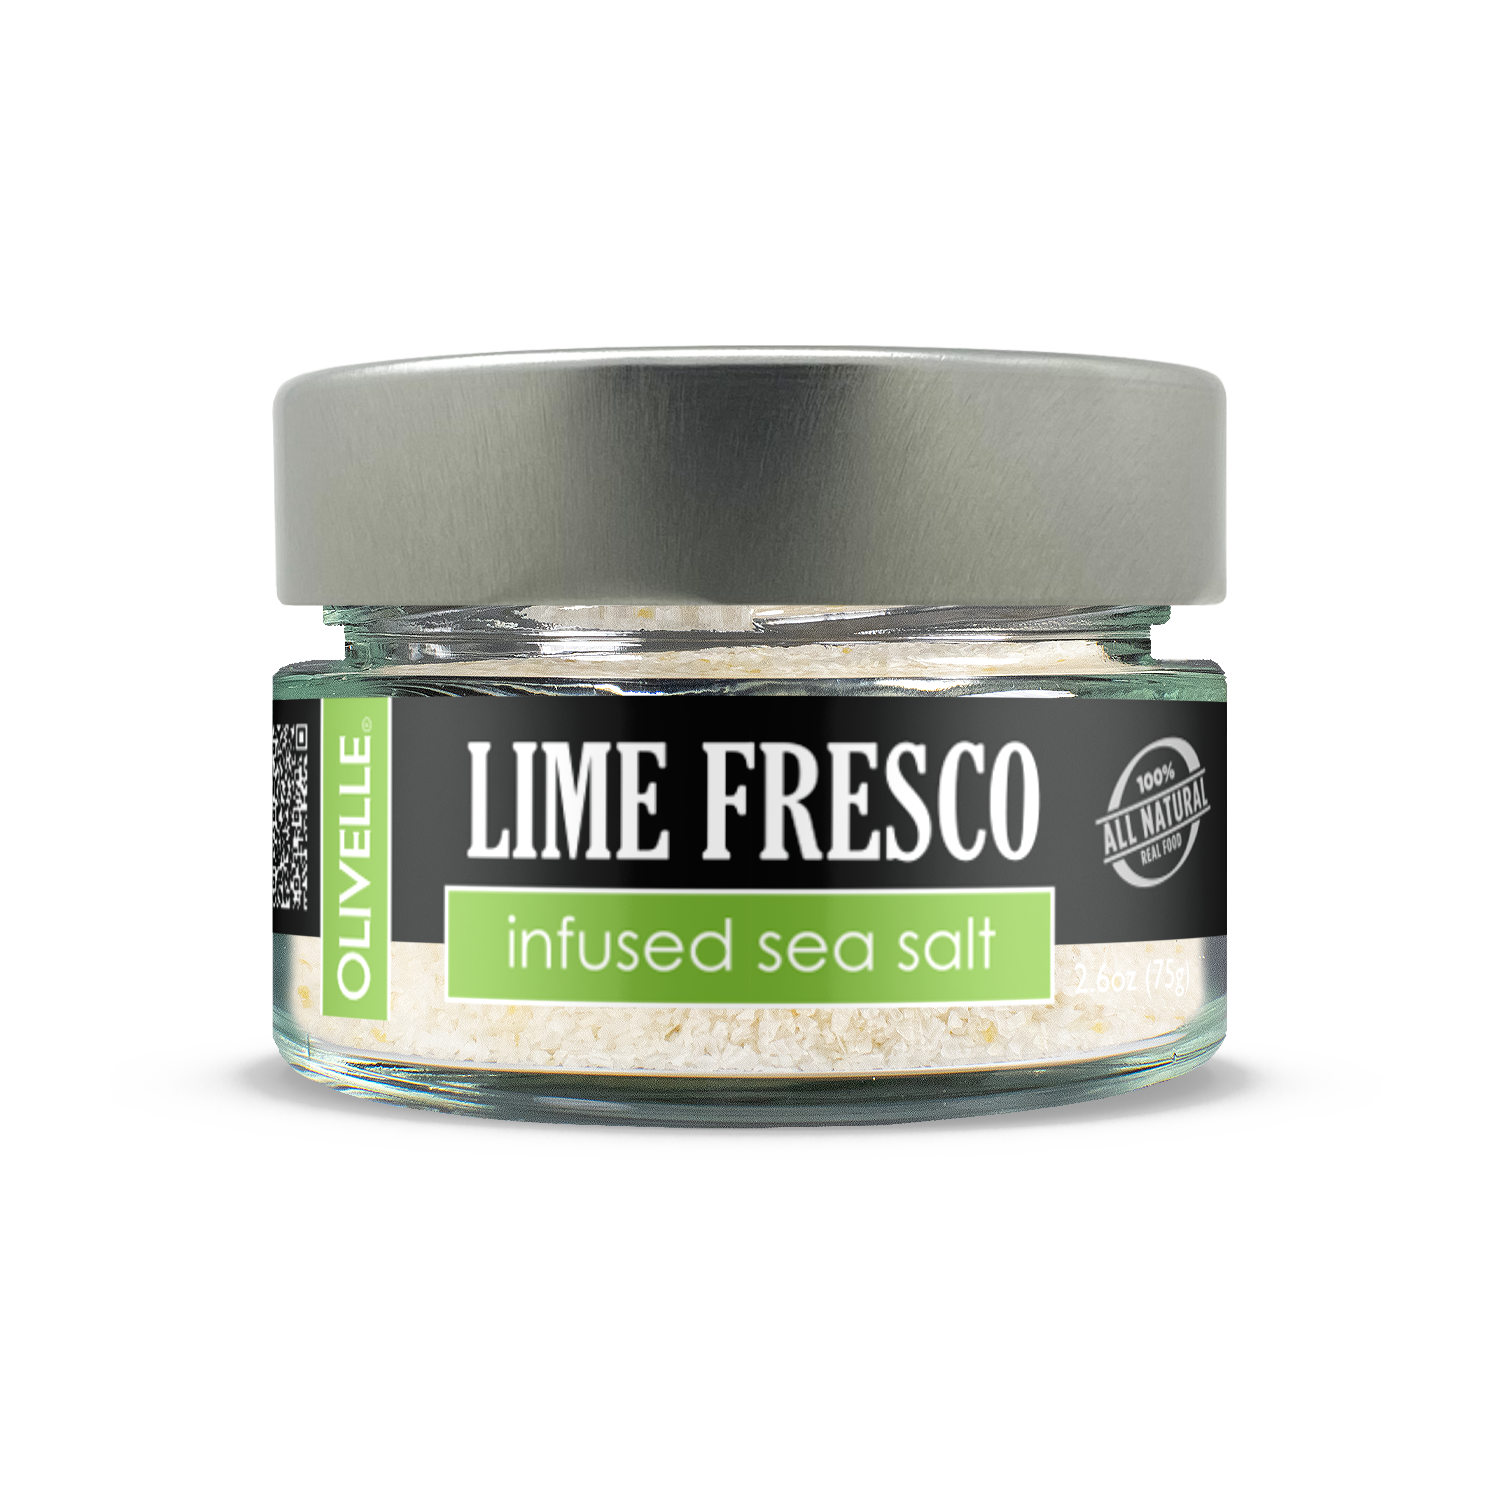 Lime Fresco Infused Sea Salt